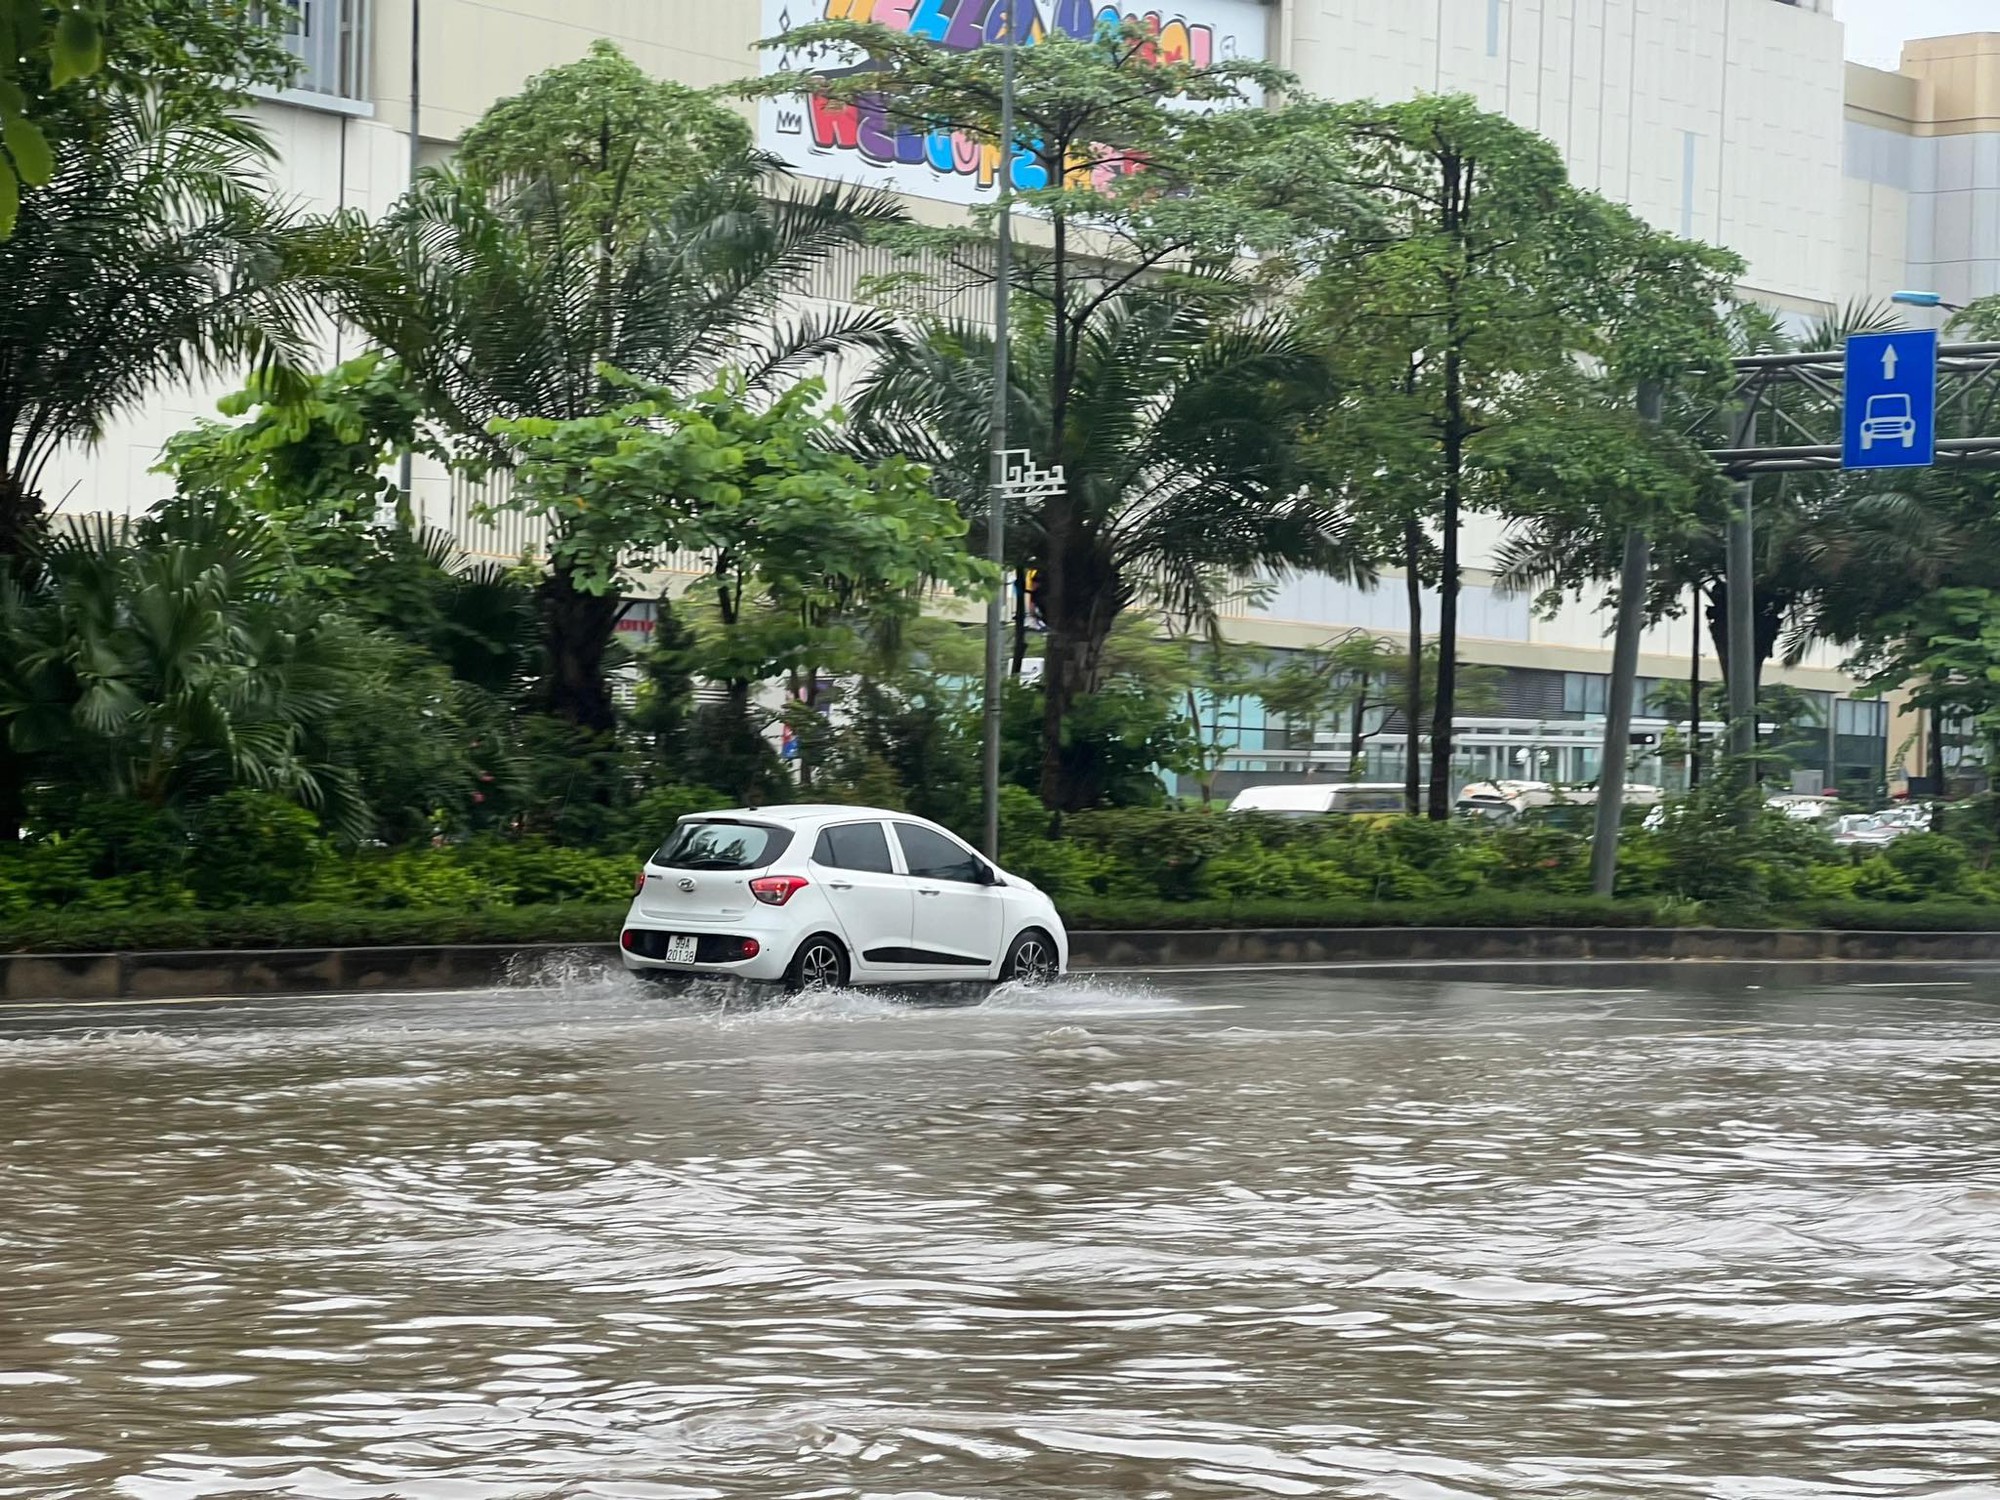 Hà Nội 'chìm trong biển nước' sau cơn mưa lớn - Ảnh 3.